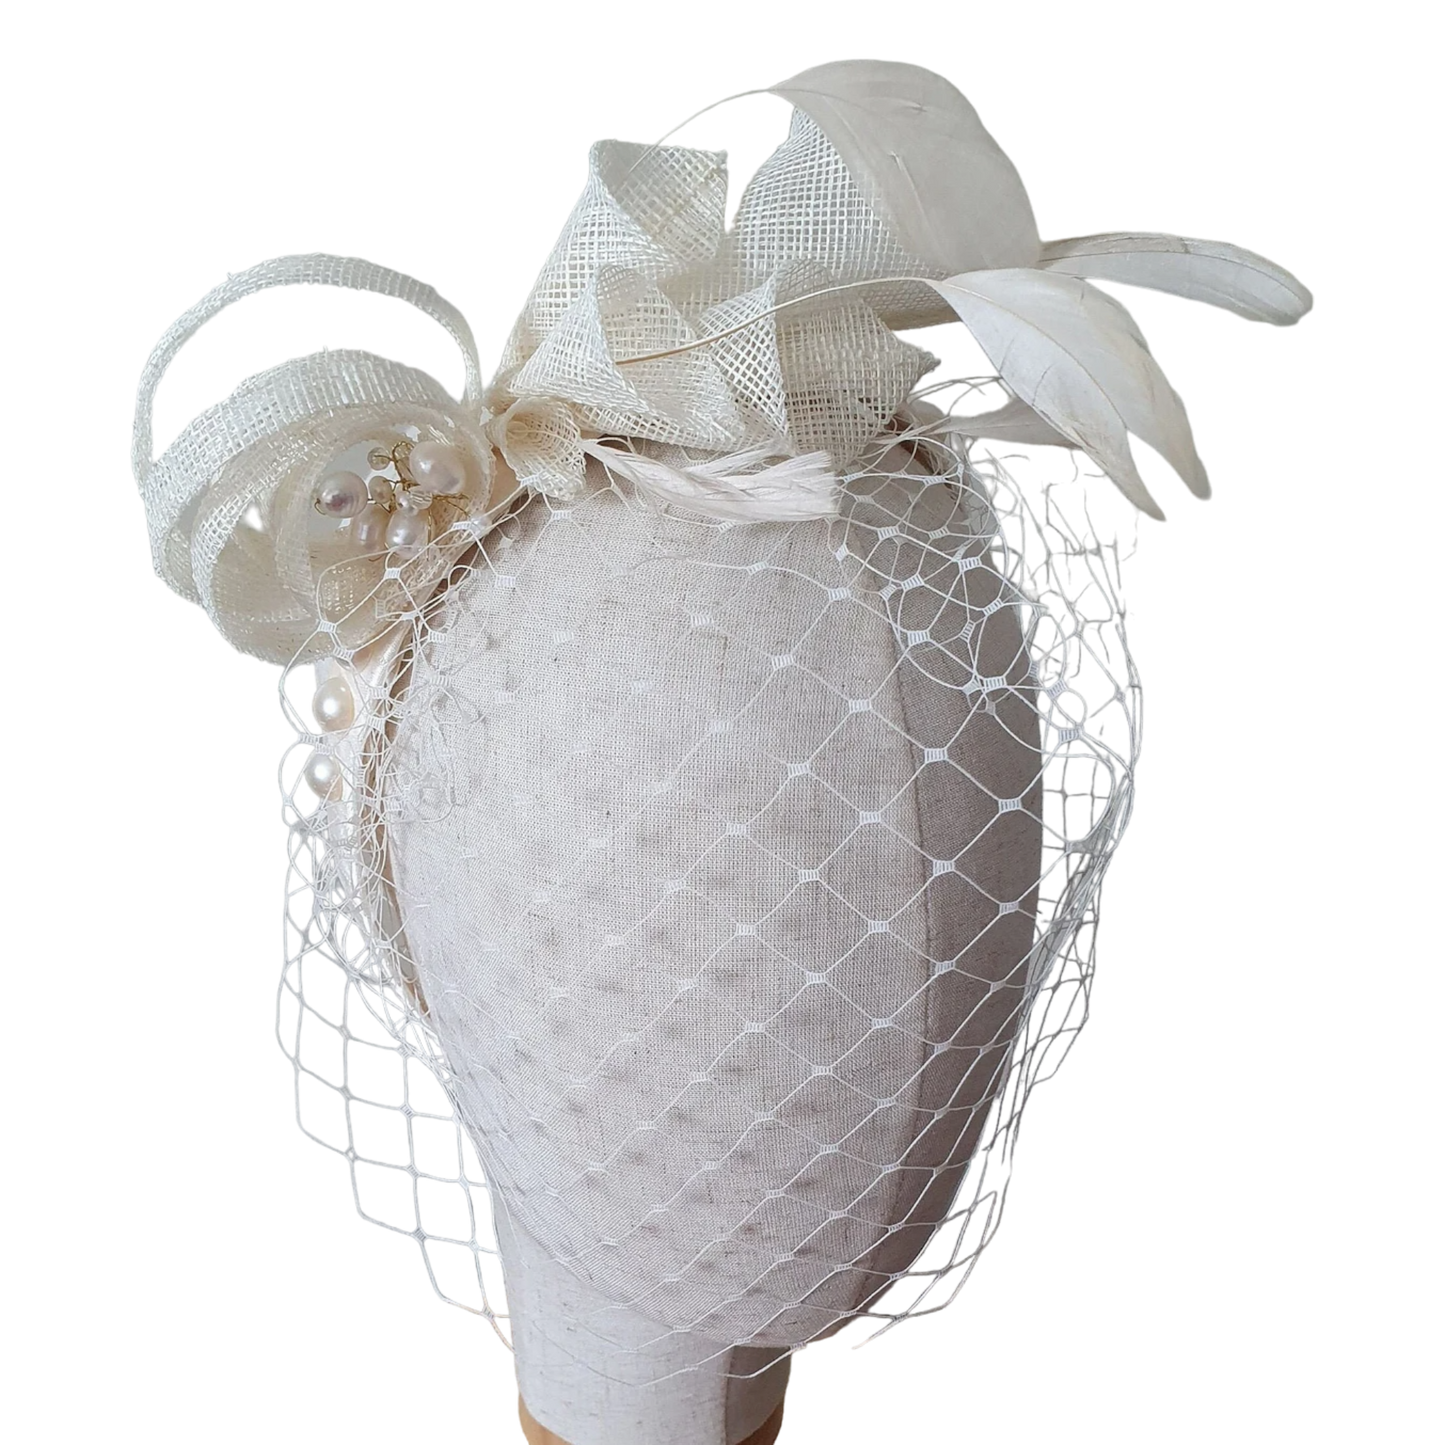 Handgemaakte sinamay hoofdband, diadeem met  sluier, bruidstiara, perfect voor bruiloften en  feestelijke  gelegenheden